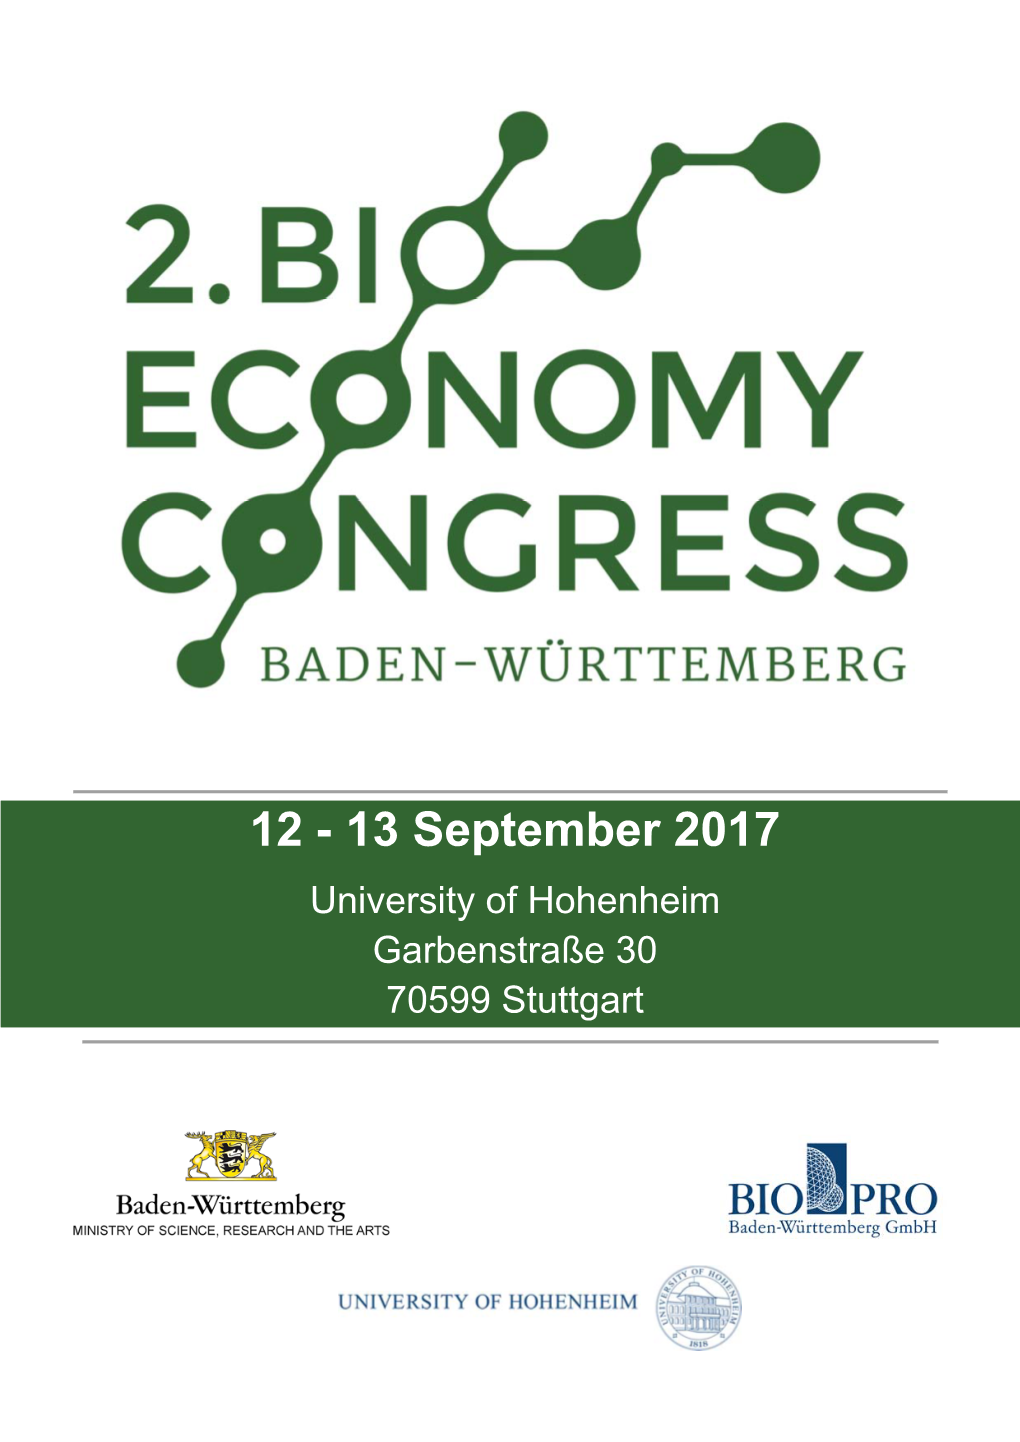 13 September 2017 University of Hohenheim Garbenstraße 30 70599 Stuttgart